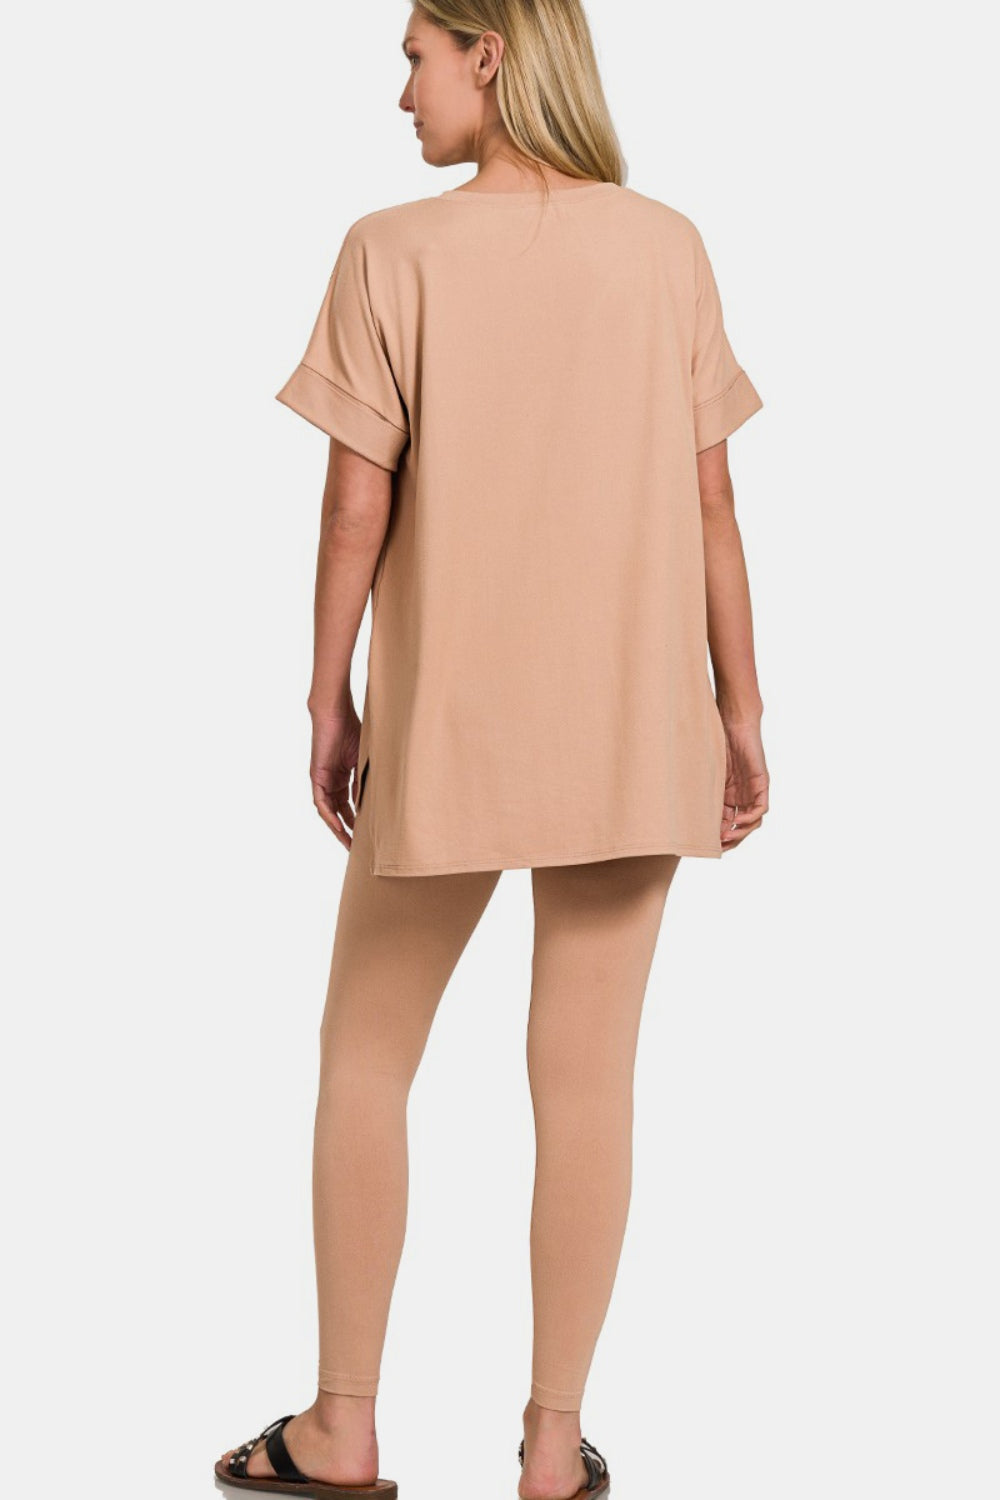 Zenana Brush V-Neck Rolled Short Sleeve T-Shirt and Leggings Lounge Set Trendsi